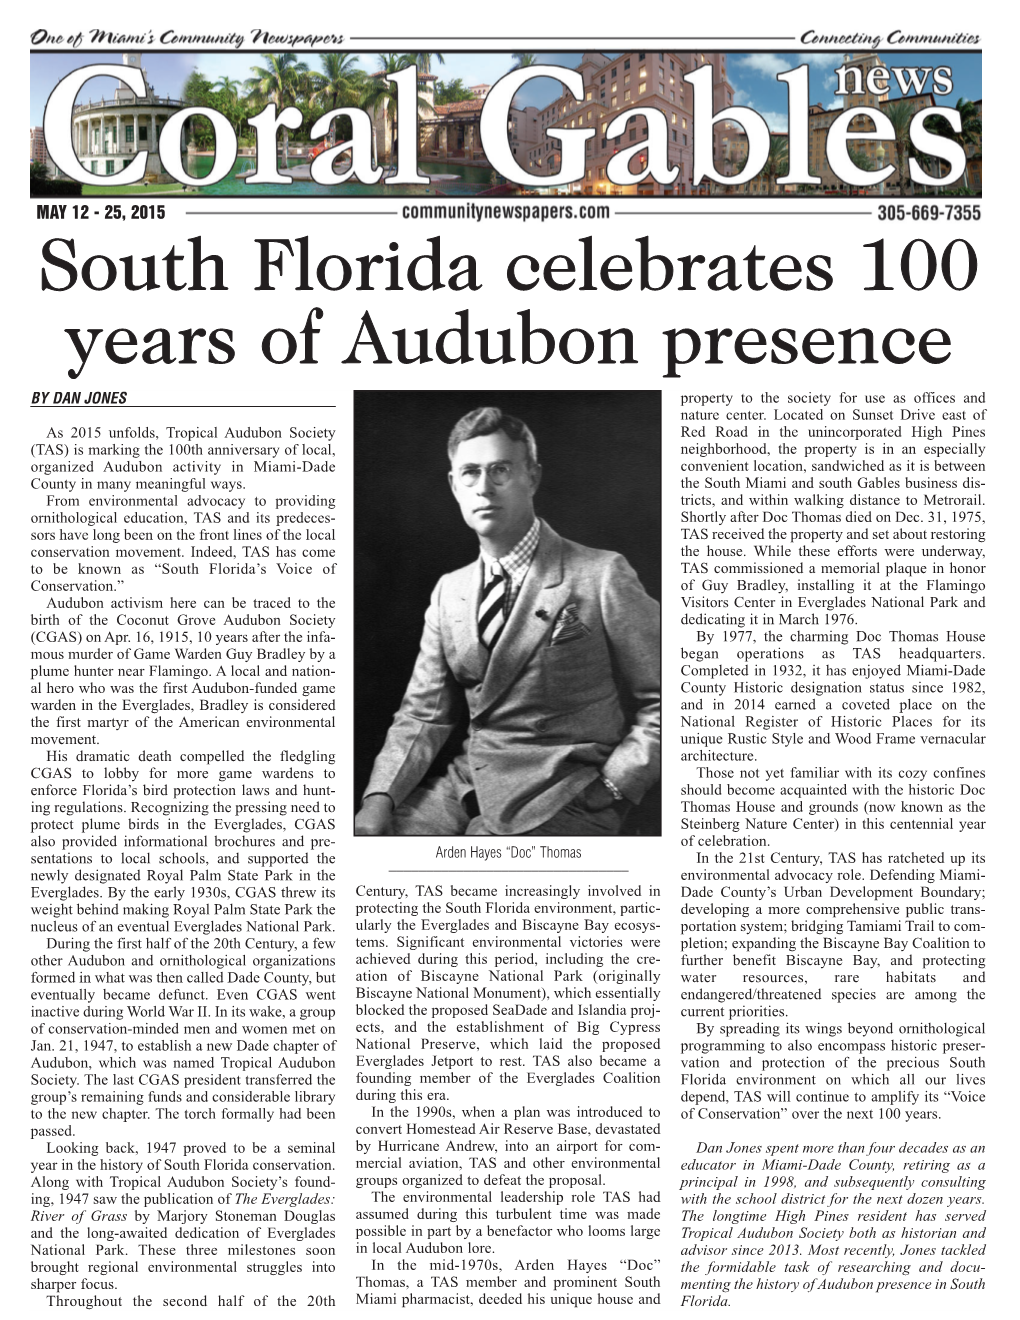 South Florida Celebrates 100 Years of Audubon Presence